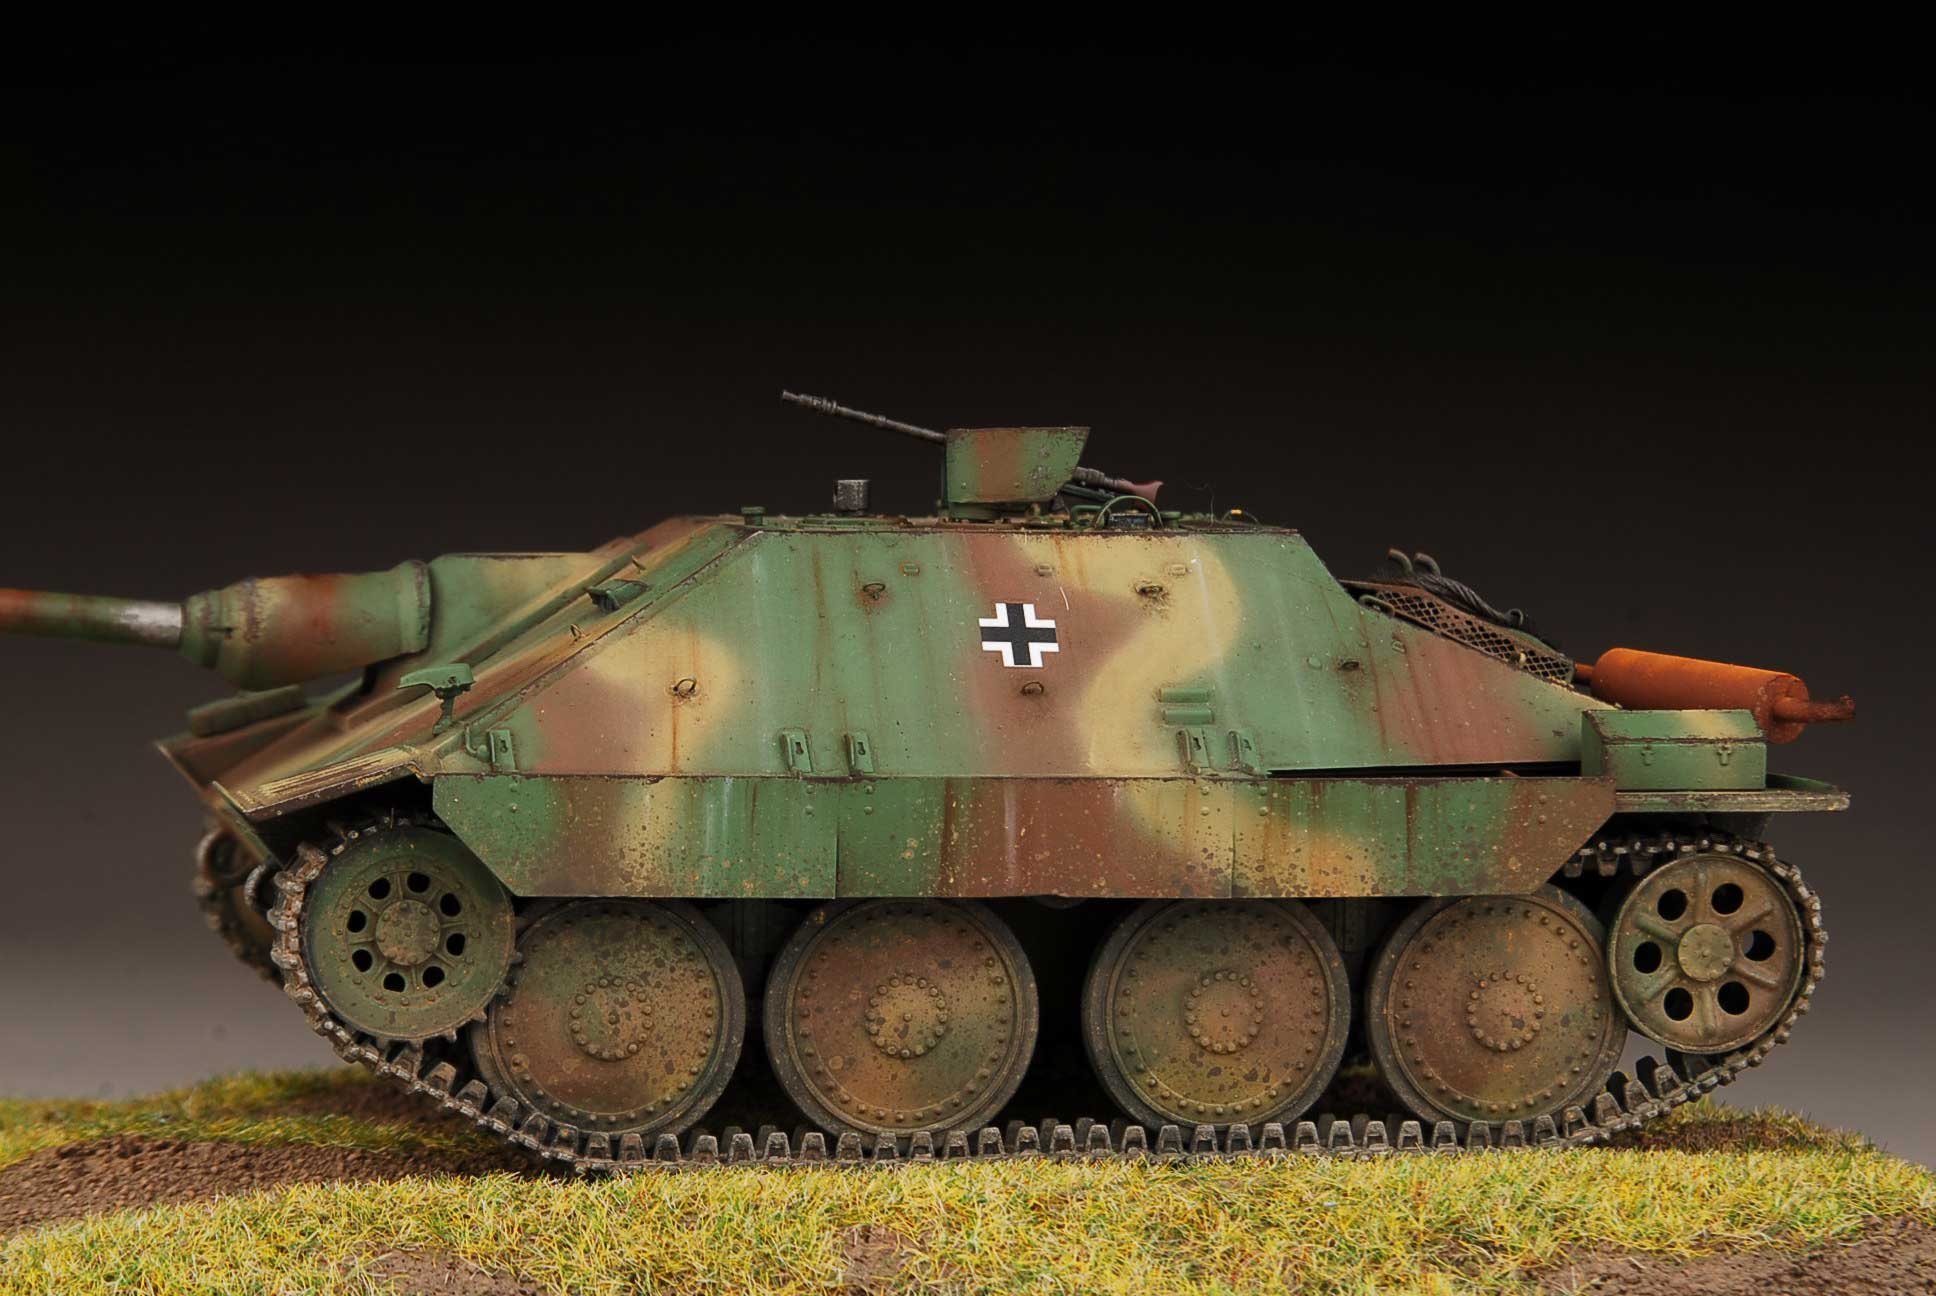 Хетзер. Ягдпанцер 38 Хетцер. Jagdpanzer 38(t) «Хетцер». Jagdpanzer 38. САУ Хетцер 1.35.